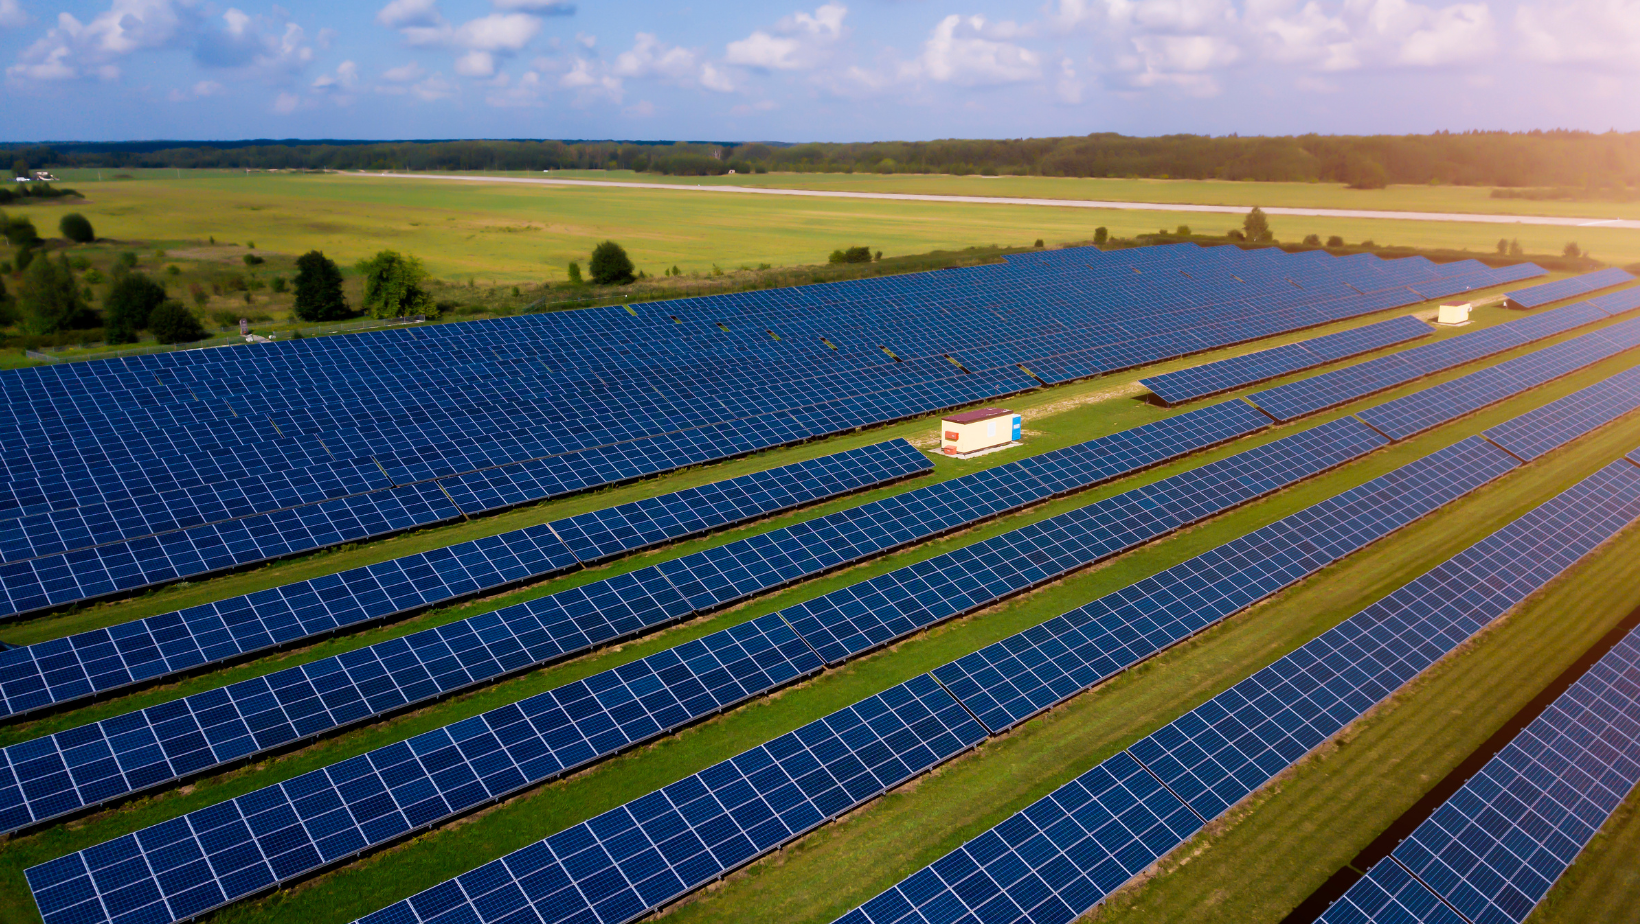 A usina solar em Minas Gerais, com uma capacidade de 142 MW, representa um investimento significativo no setor de energia renovável.